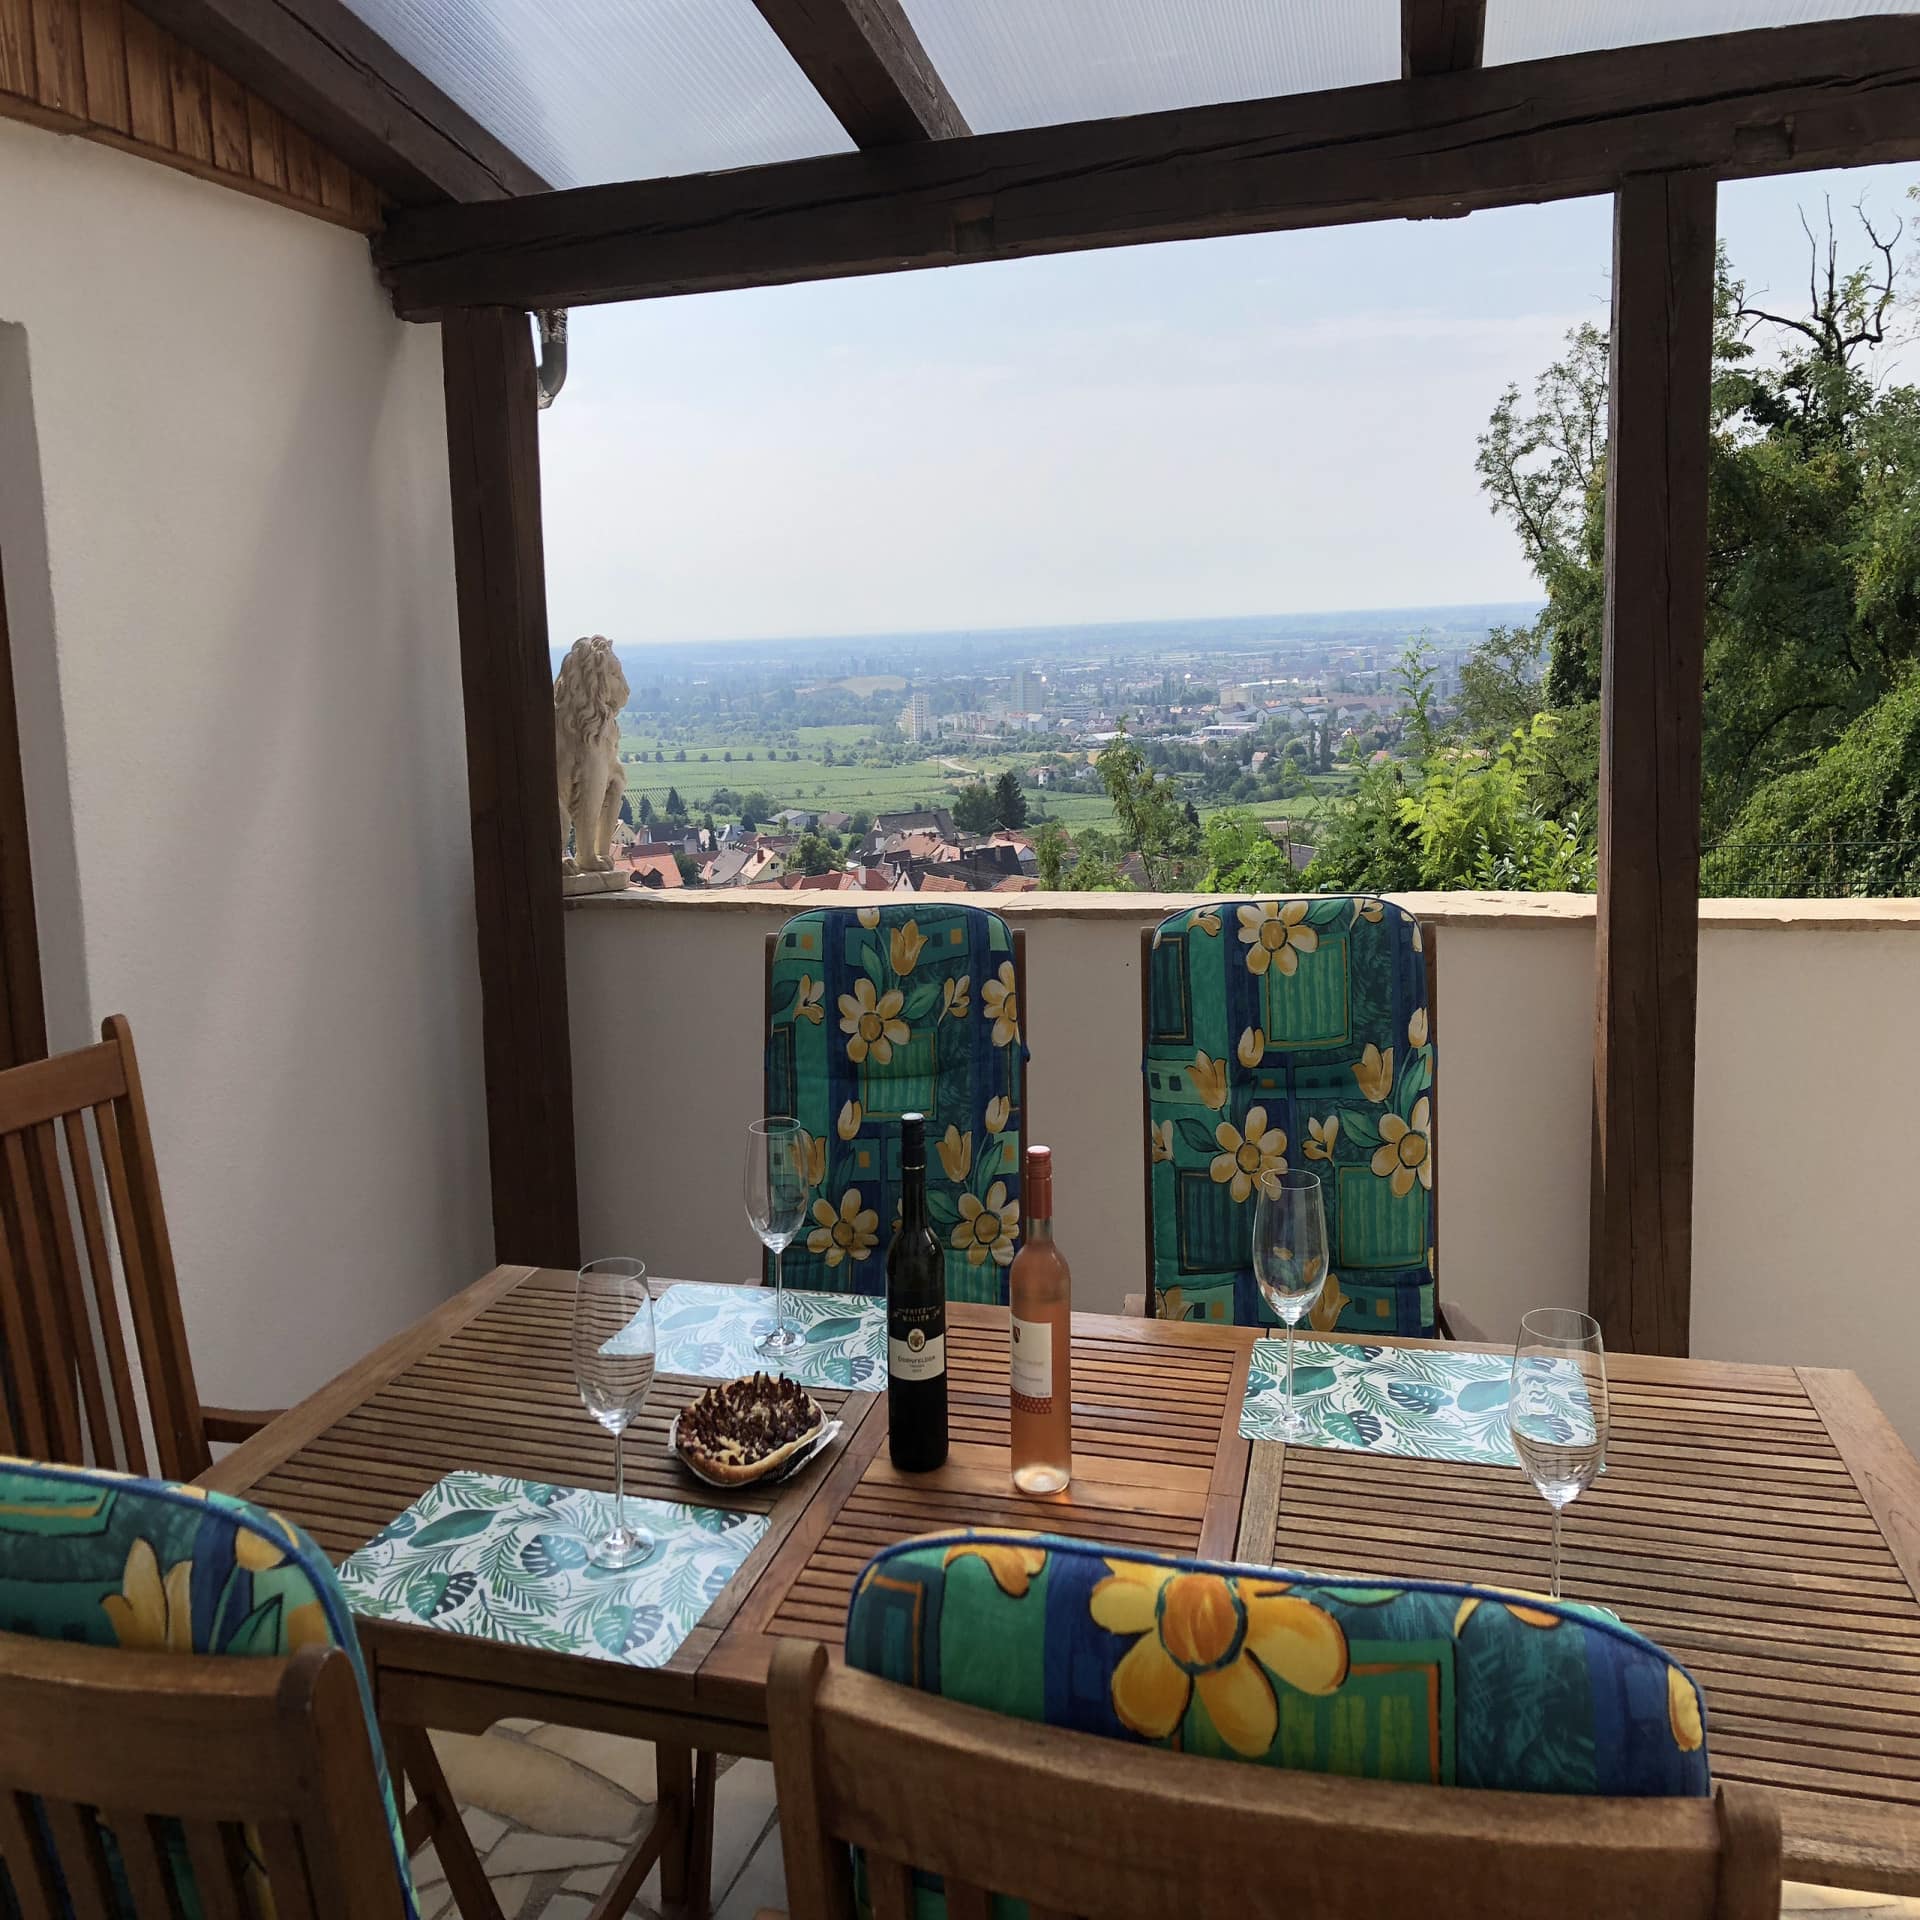 Balkon mit Tisch auf dem 2 Weinflaschen, Weingläser und etwas zu Essen stehen. Aussicht auf die Weinberge und Häuser.